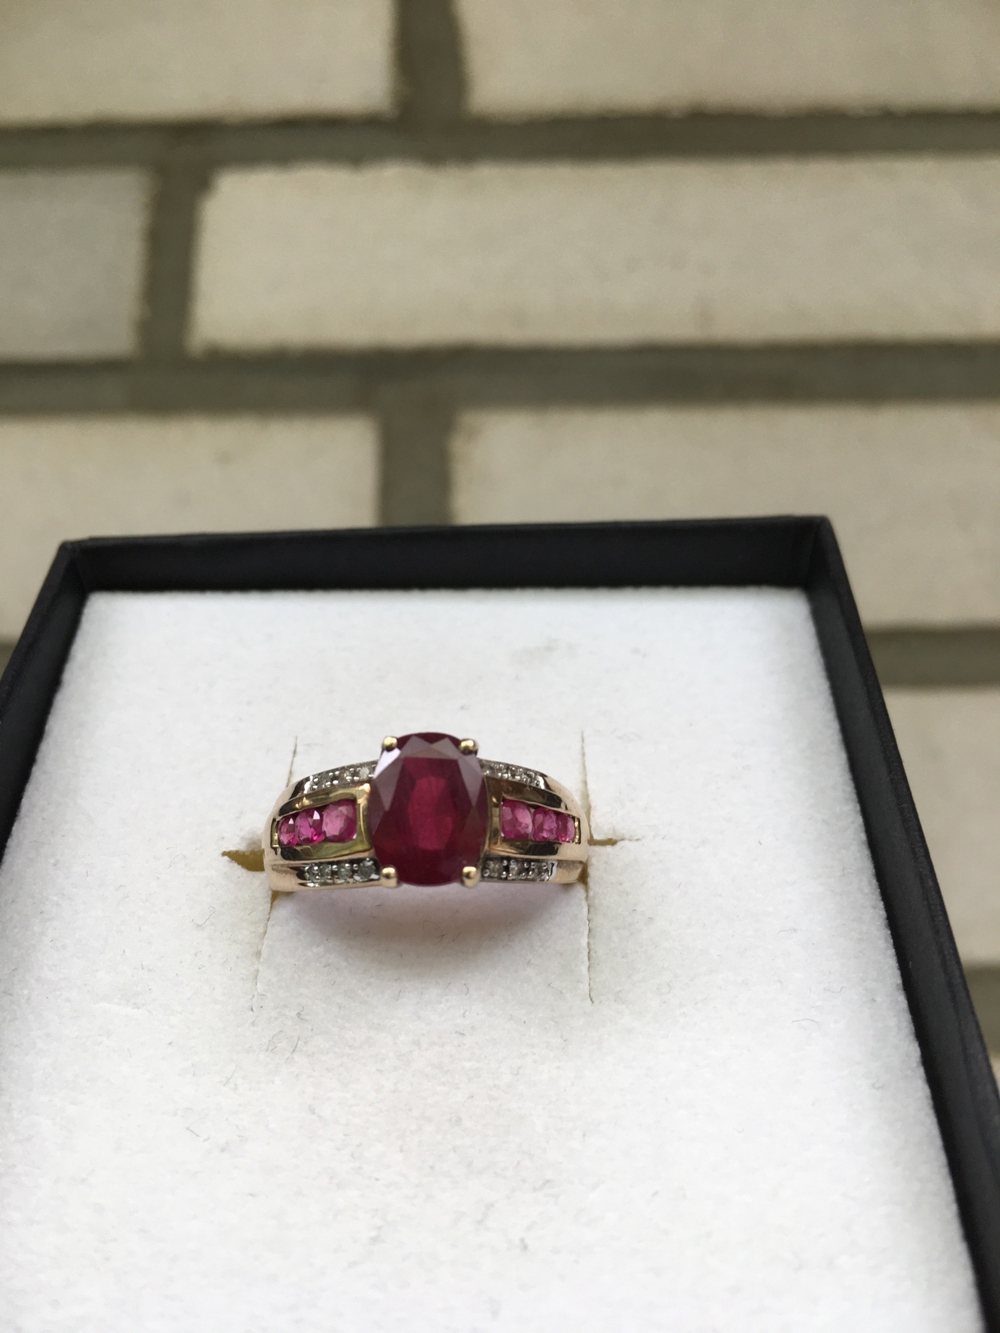 NEU! Rubin Ring (Rubinhochzeit) mit Diamanten, 375 GG, Gr. 18